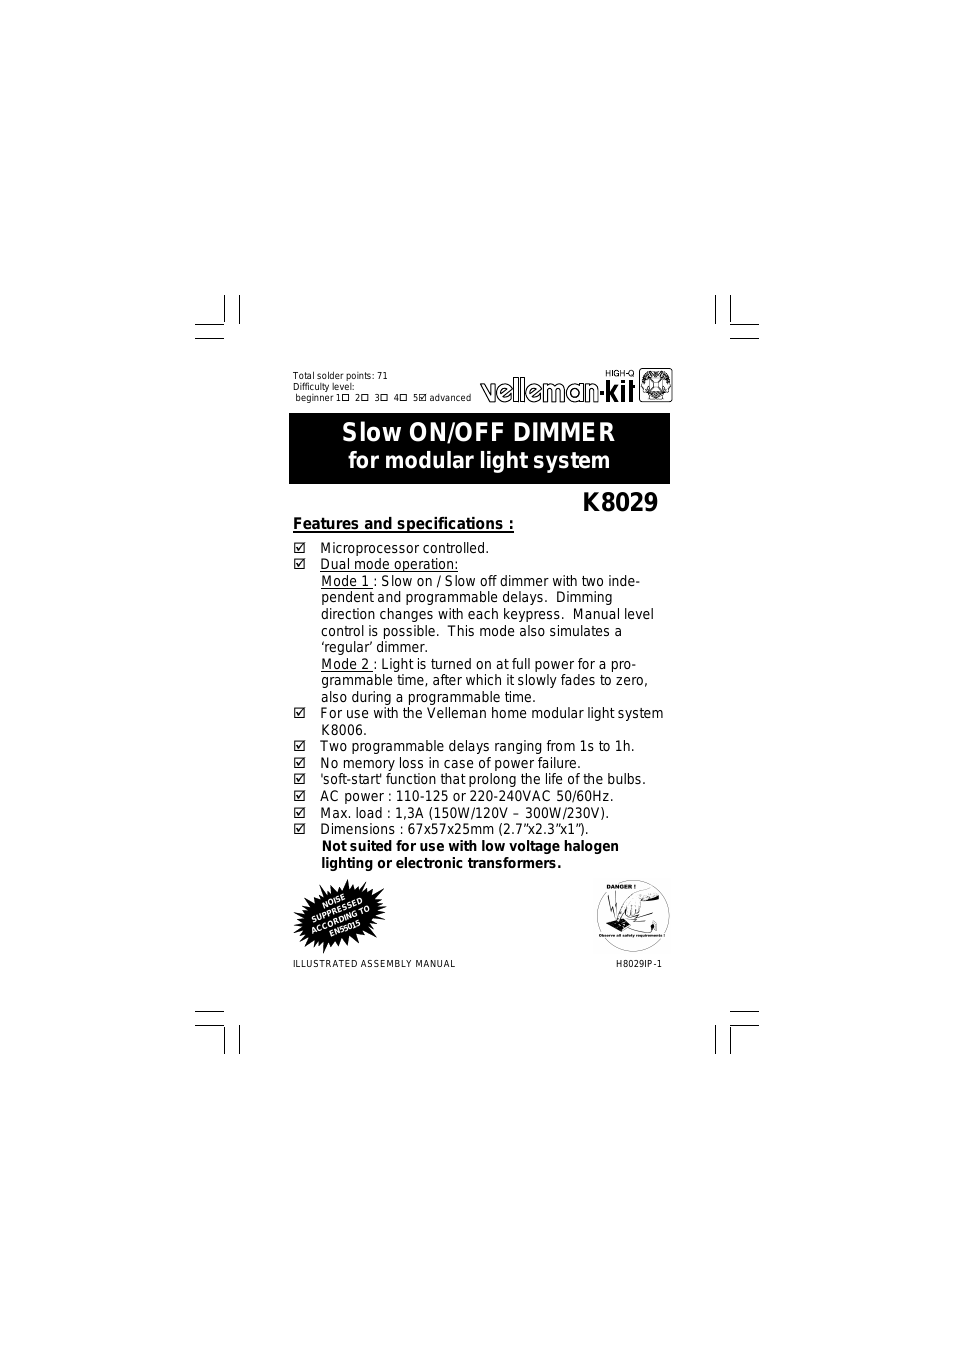 K8029 Assembly instructions